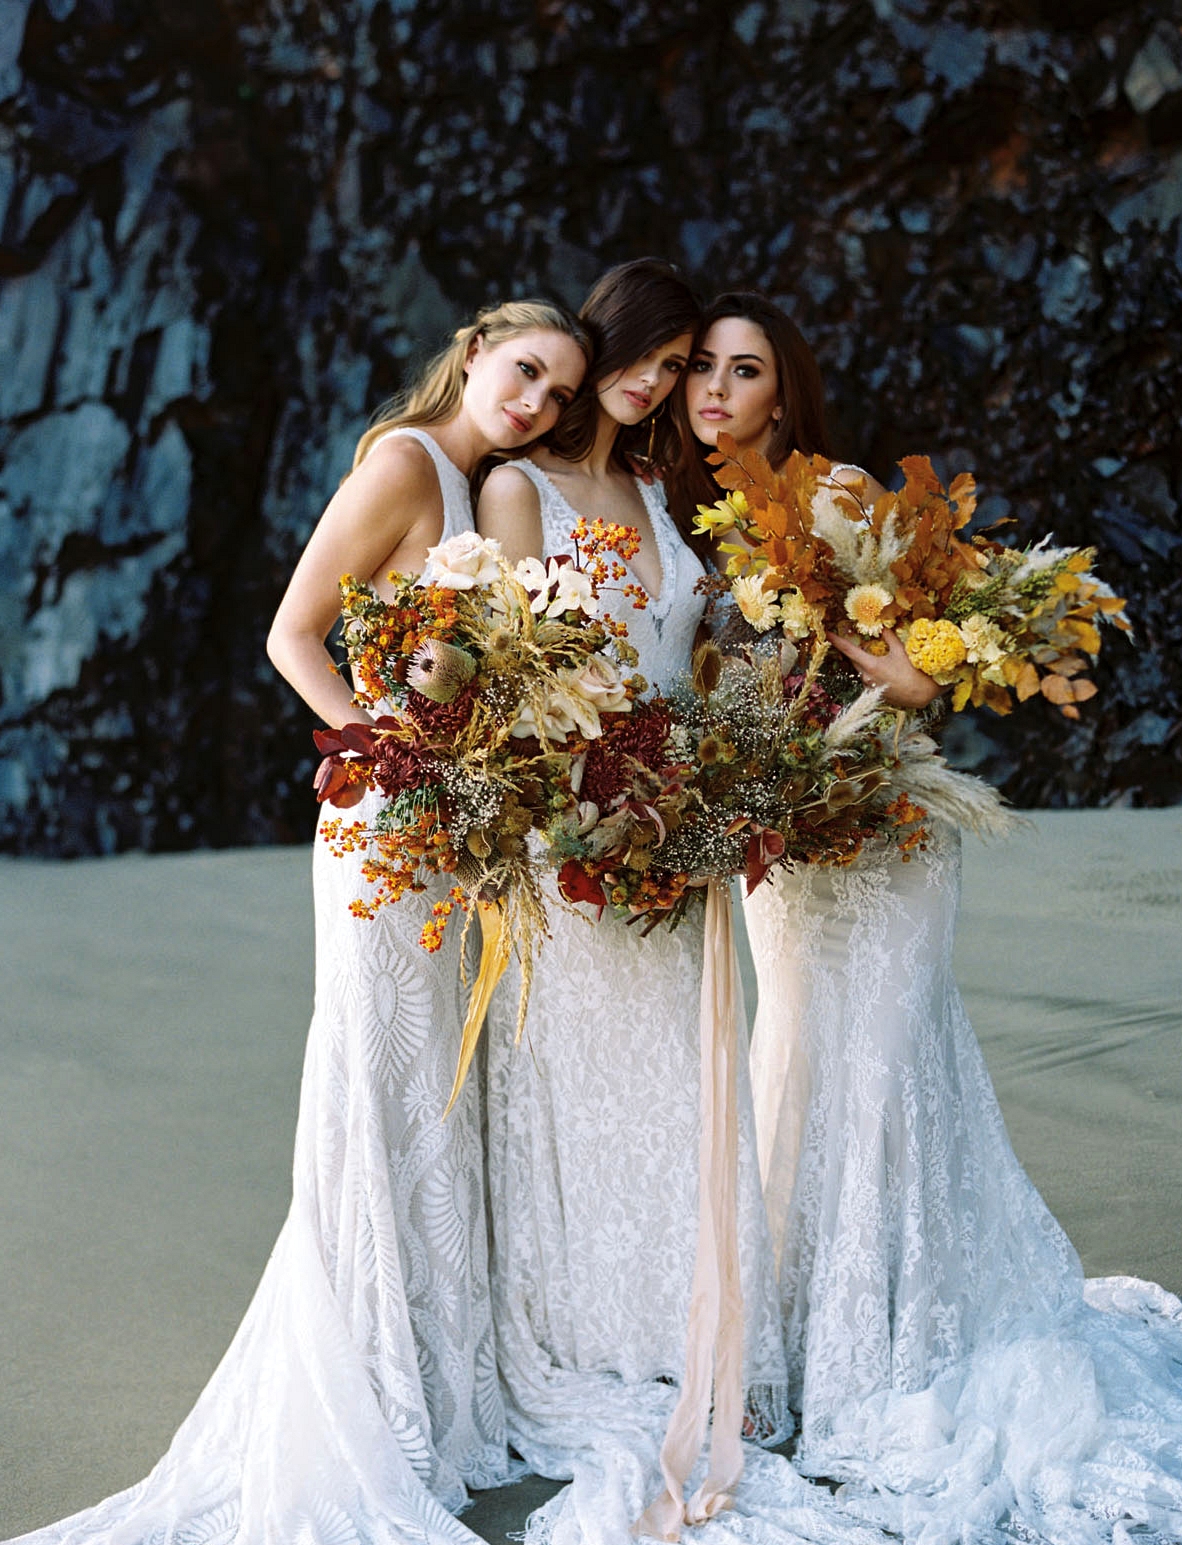 Allure Bridals: Boho Wedding Dresses by Wilderly Bride